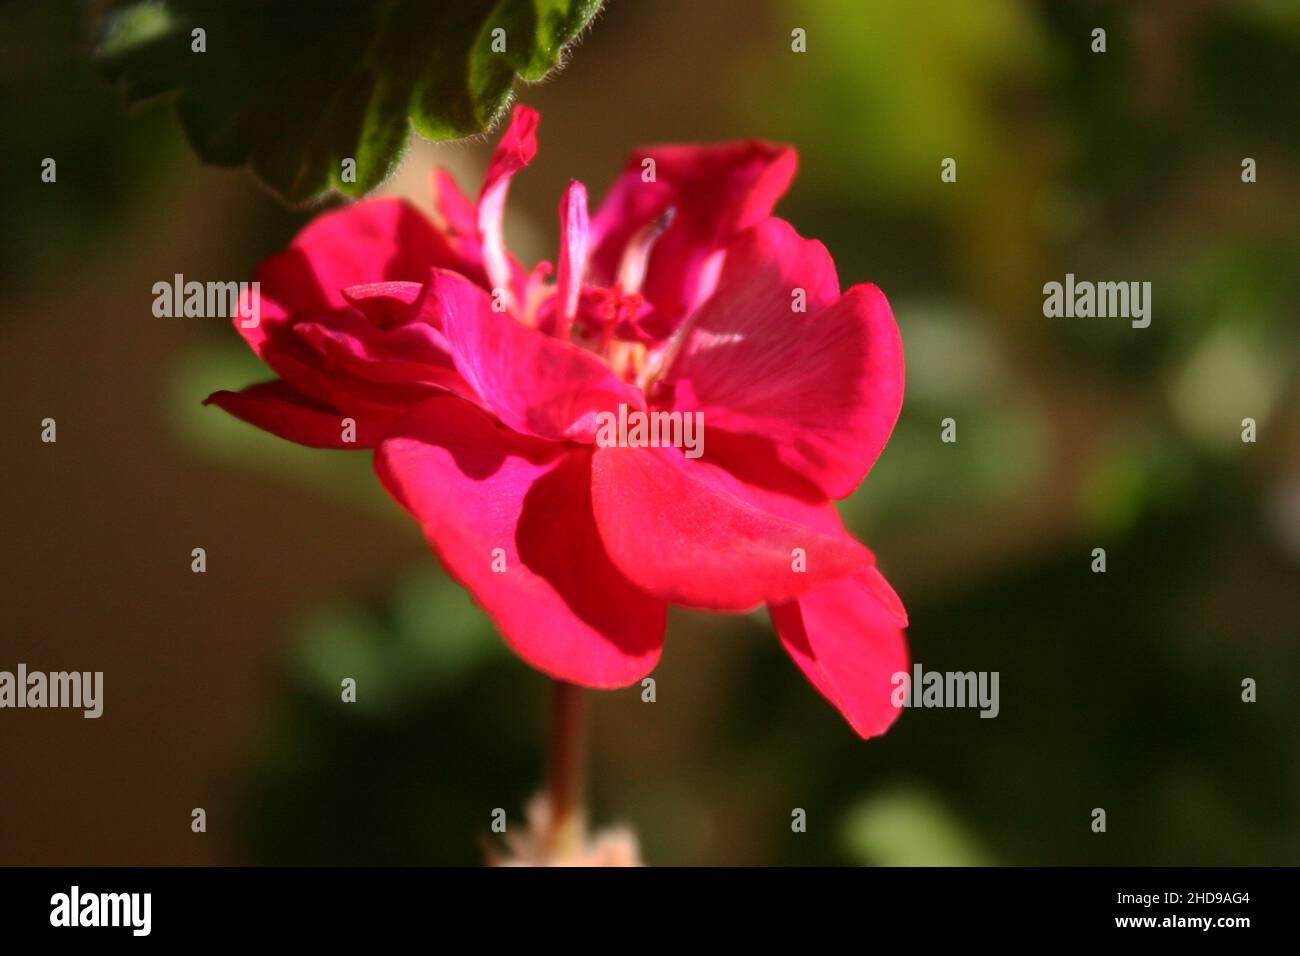 Bright pink geranium (pelargonium) flower close up Stock Photo